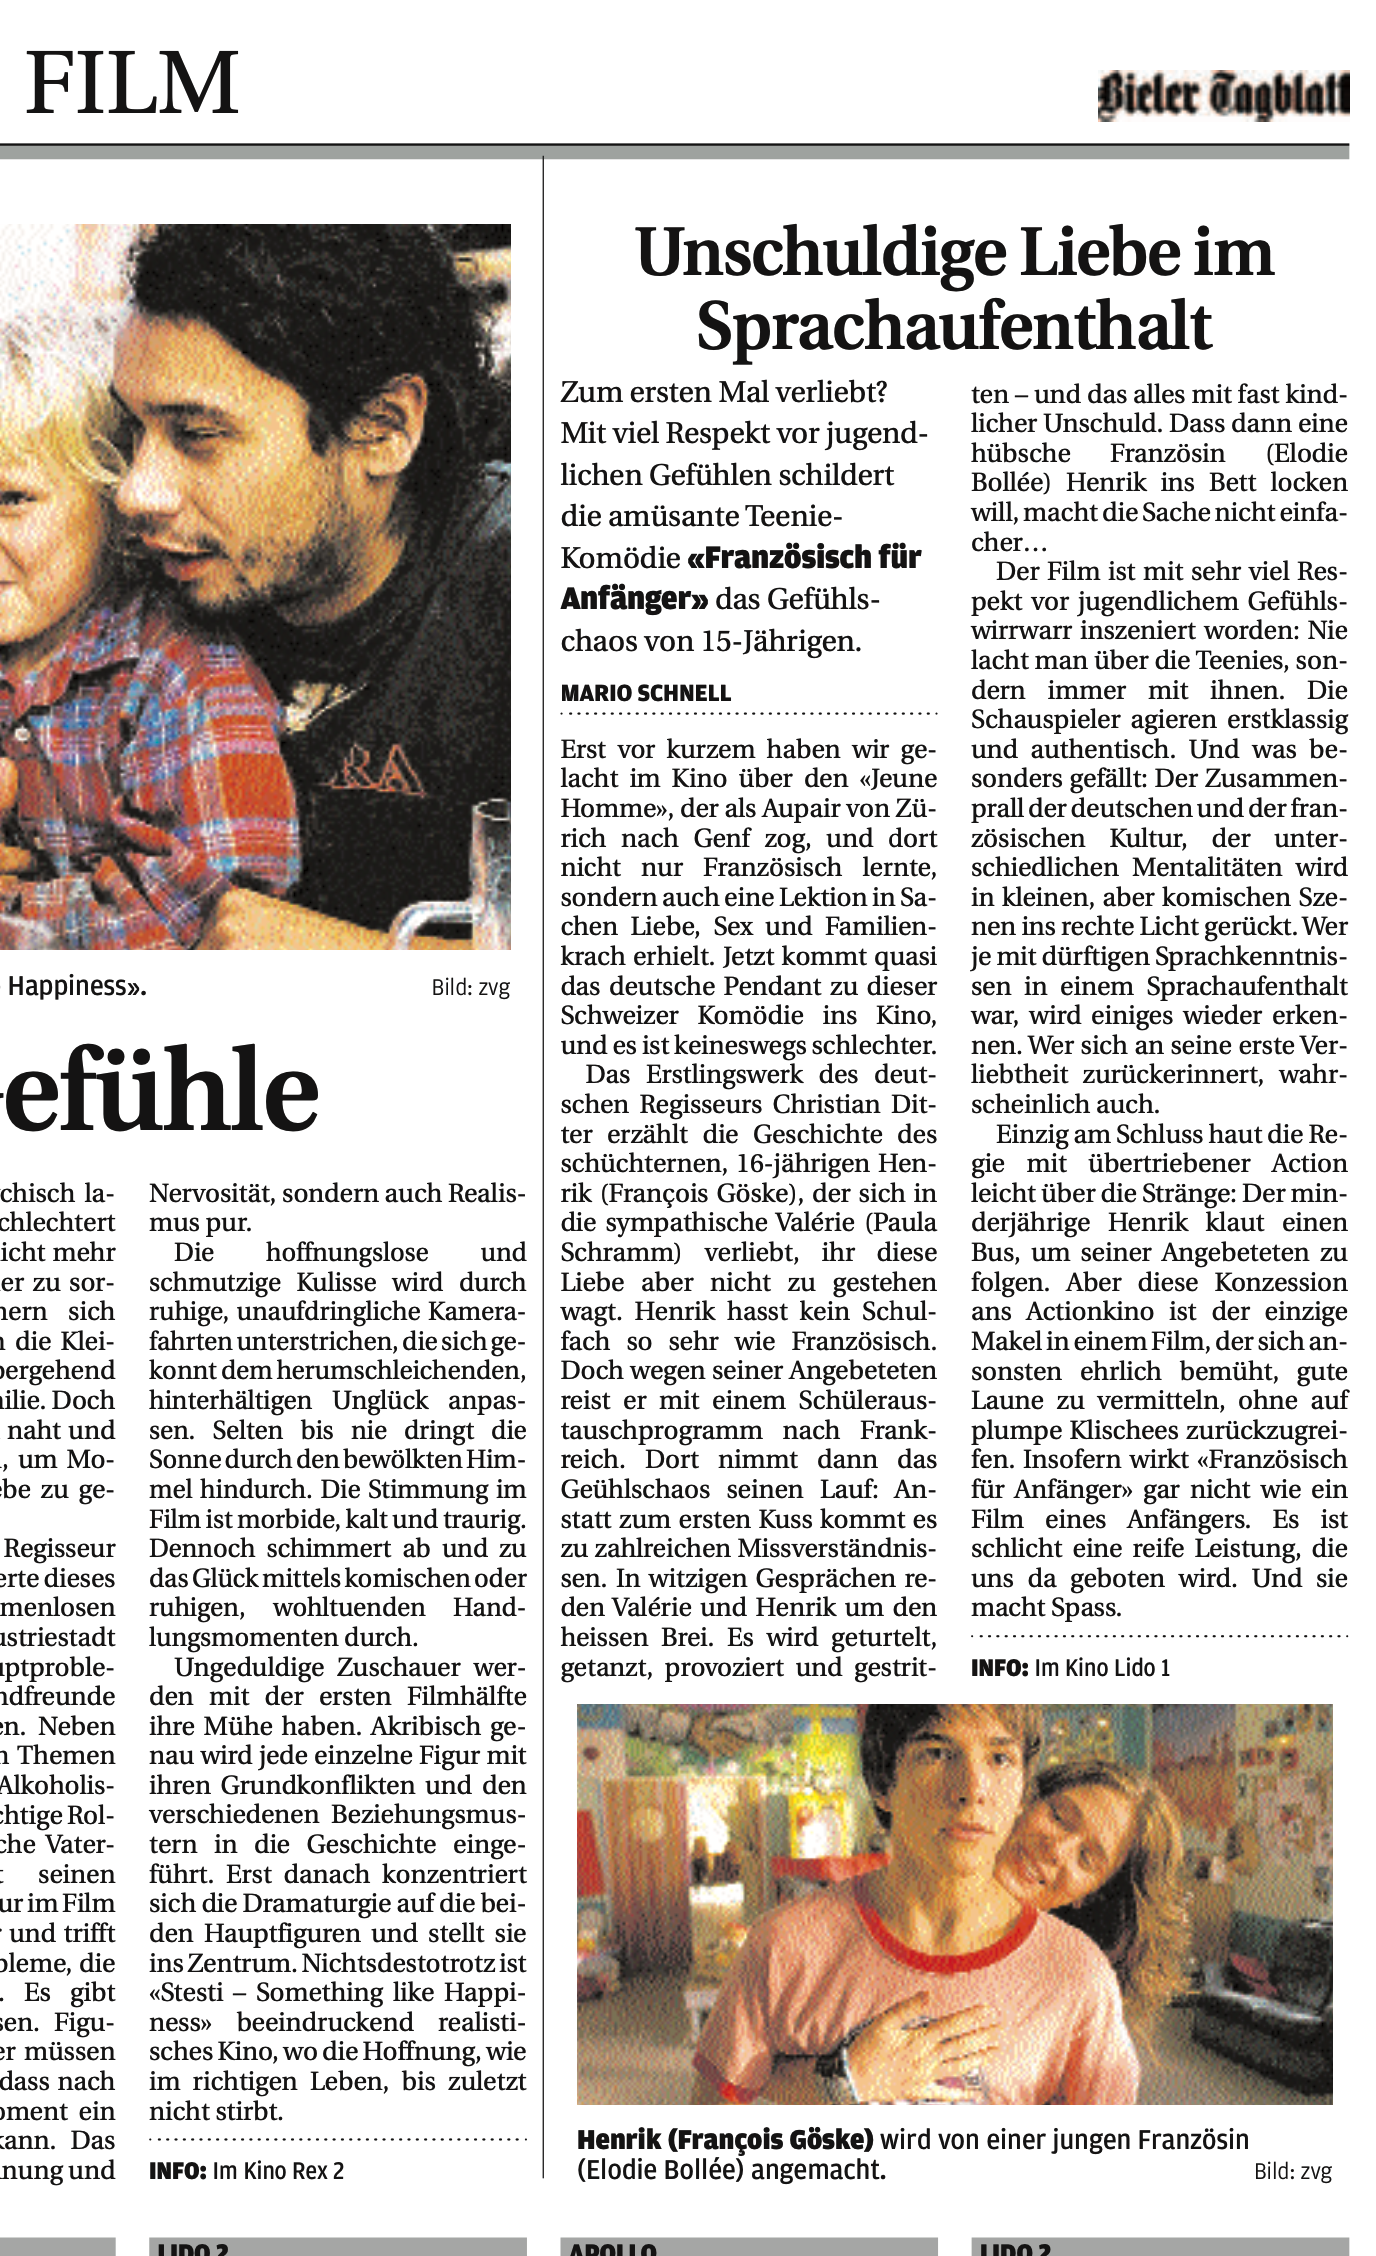 Bieler Tagblatt 24-06-2006.png